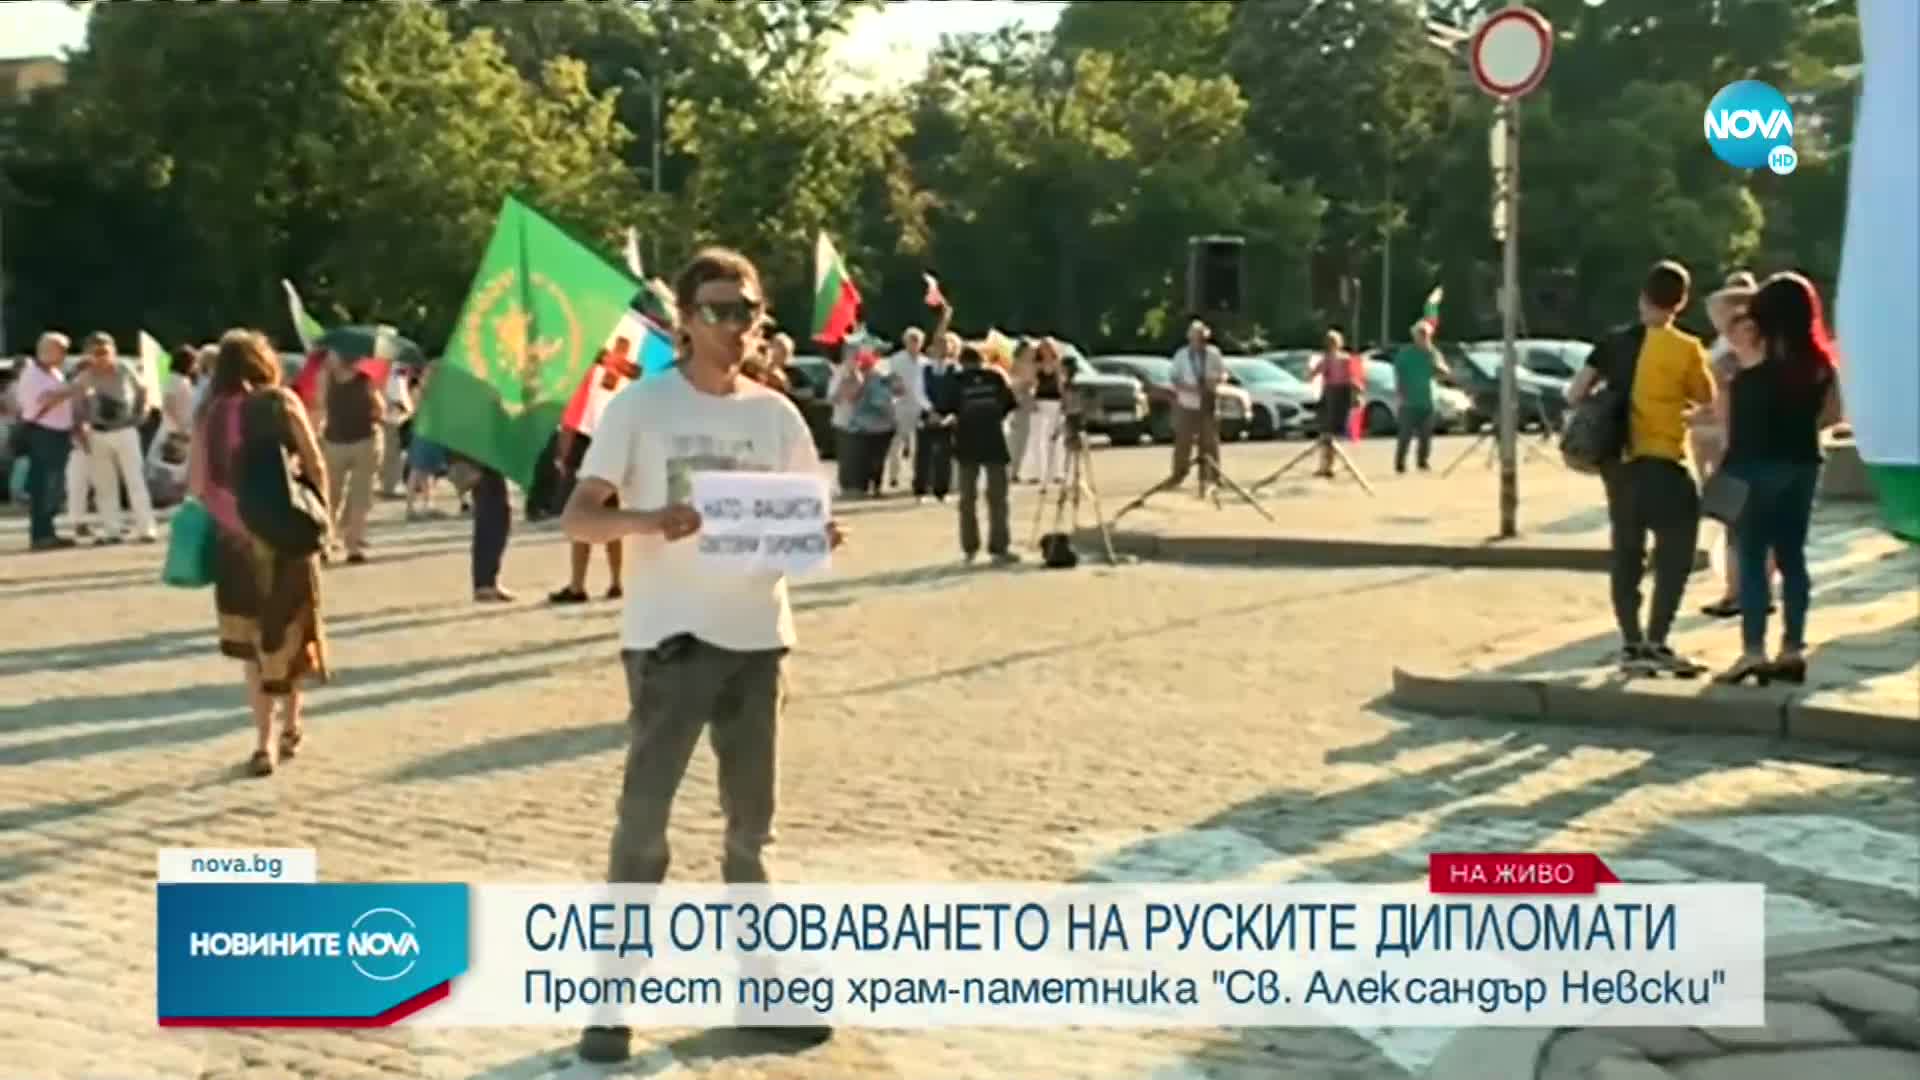 Протест пред храм-паметникът “Св. Александър Невски” заради отзоваването на руските дипломати